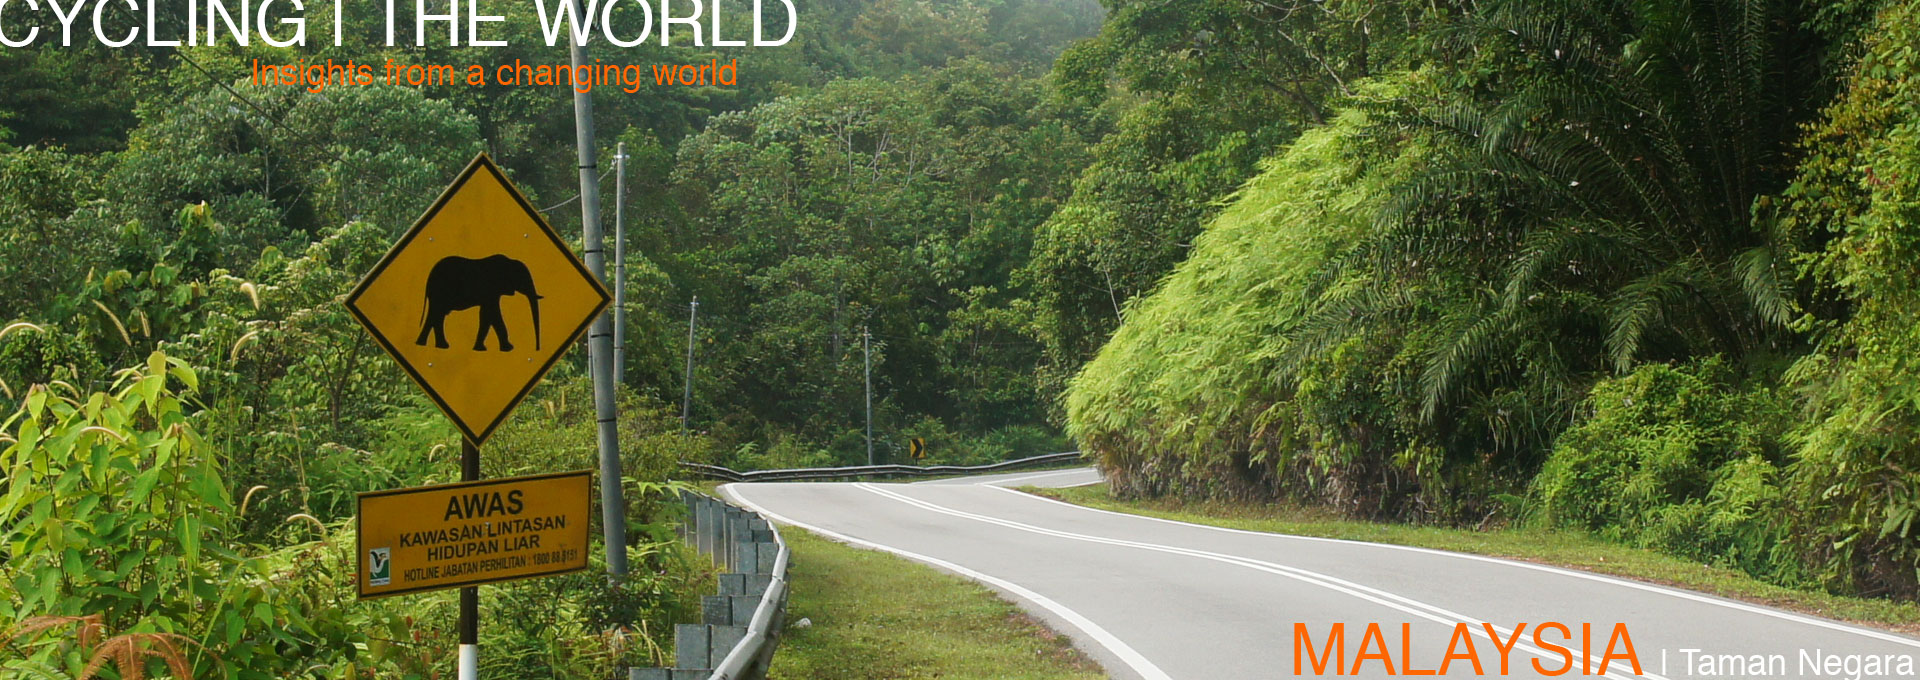 MODULENATURE Cycling the World Malaysia